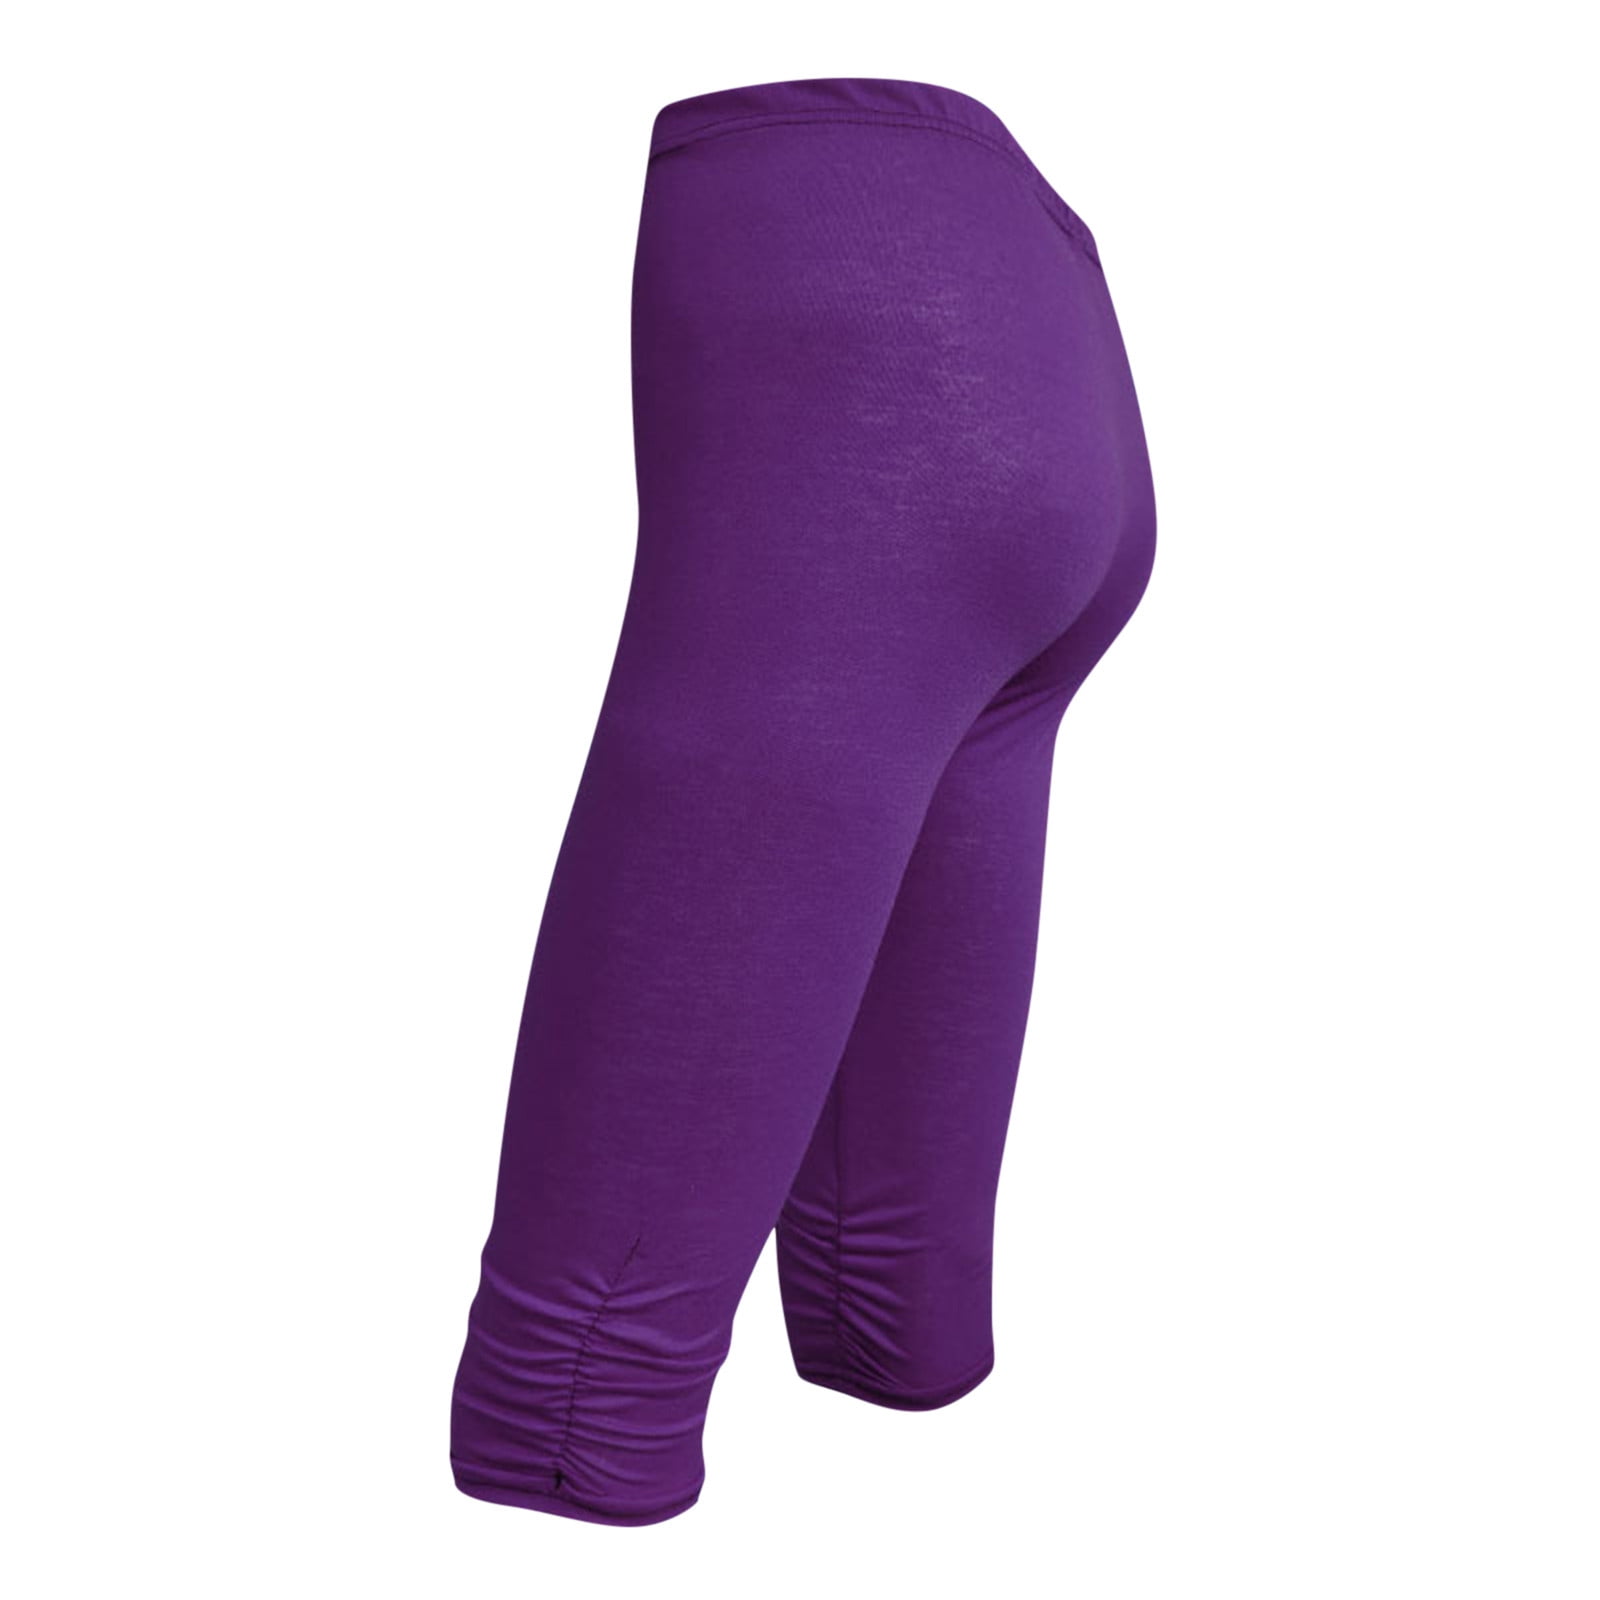 AIEOTT Plus Size Yoga Pants Leggings for Women, Women's Versatile Multi ...